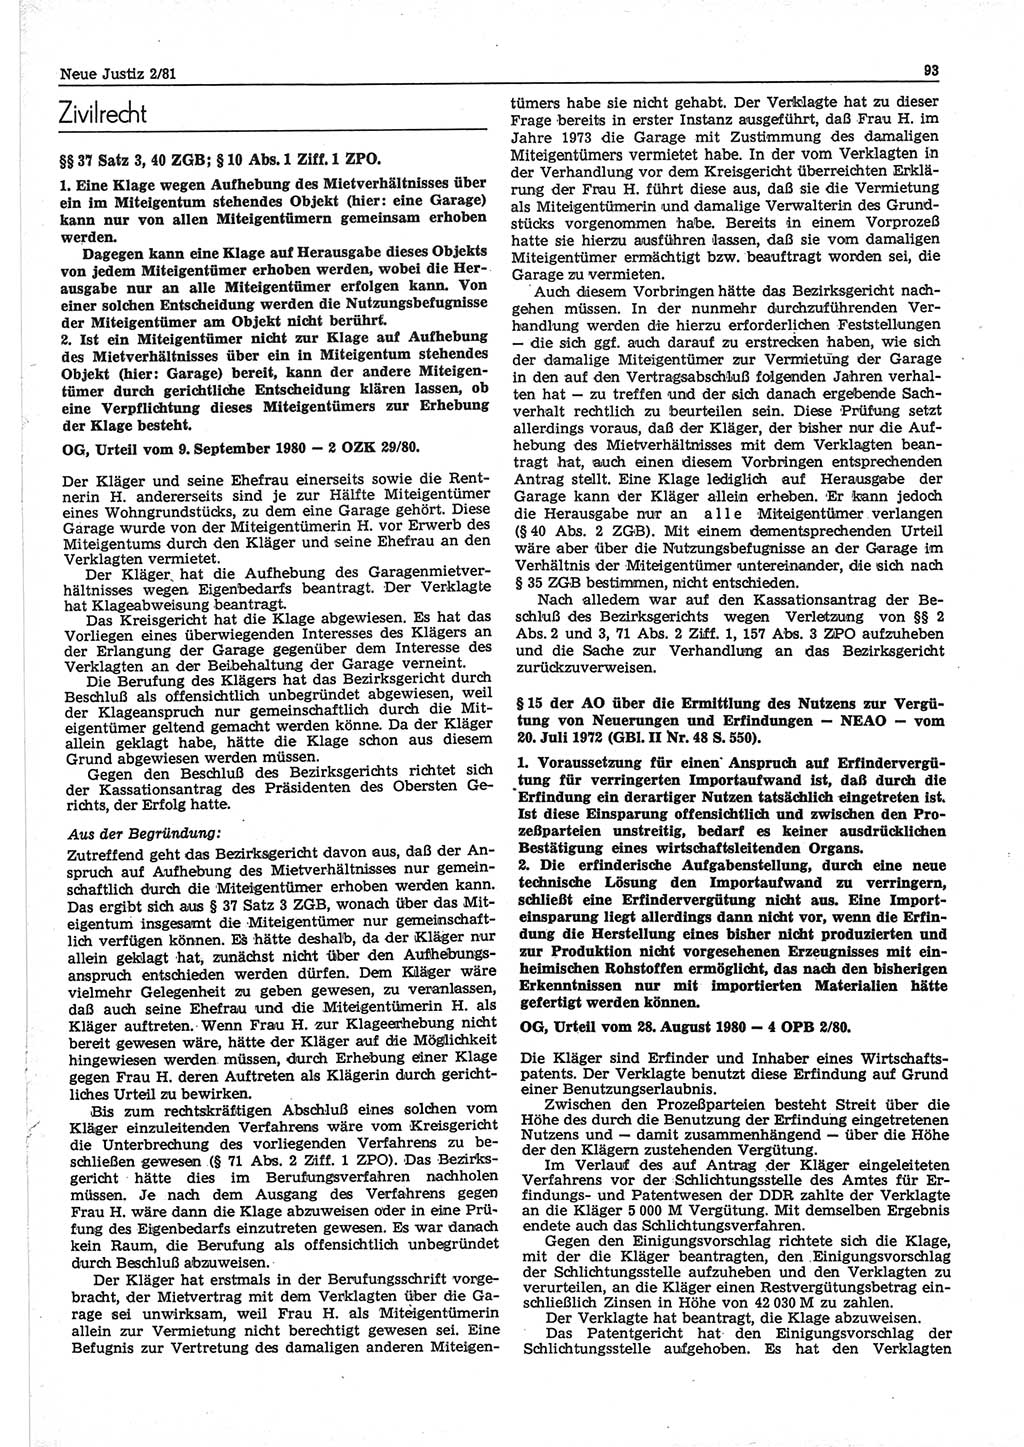 Neue Justiz (NJ), Zeitschrift für sozialistisches Recht und Gesetzlichkeit [Deutsche Demokratische Republik (DDR)], 35. Jahrgang 1981, Seite 93 (NJ DDR 1981, S. 93)